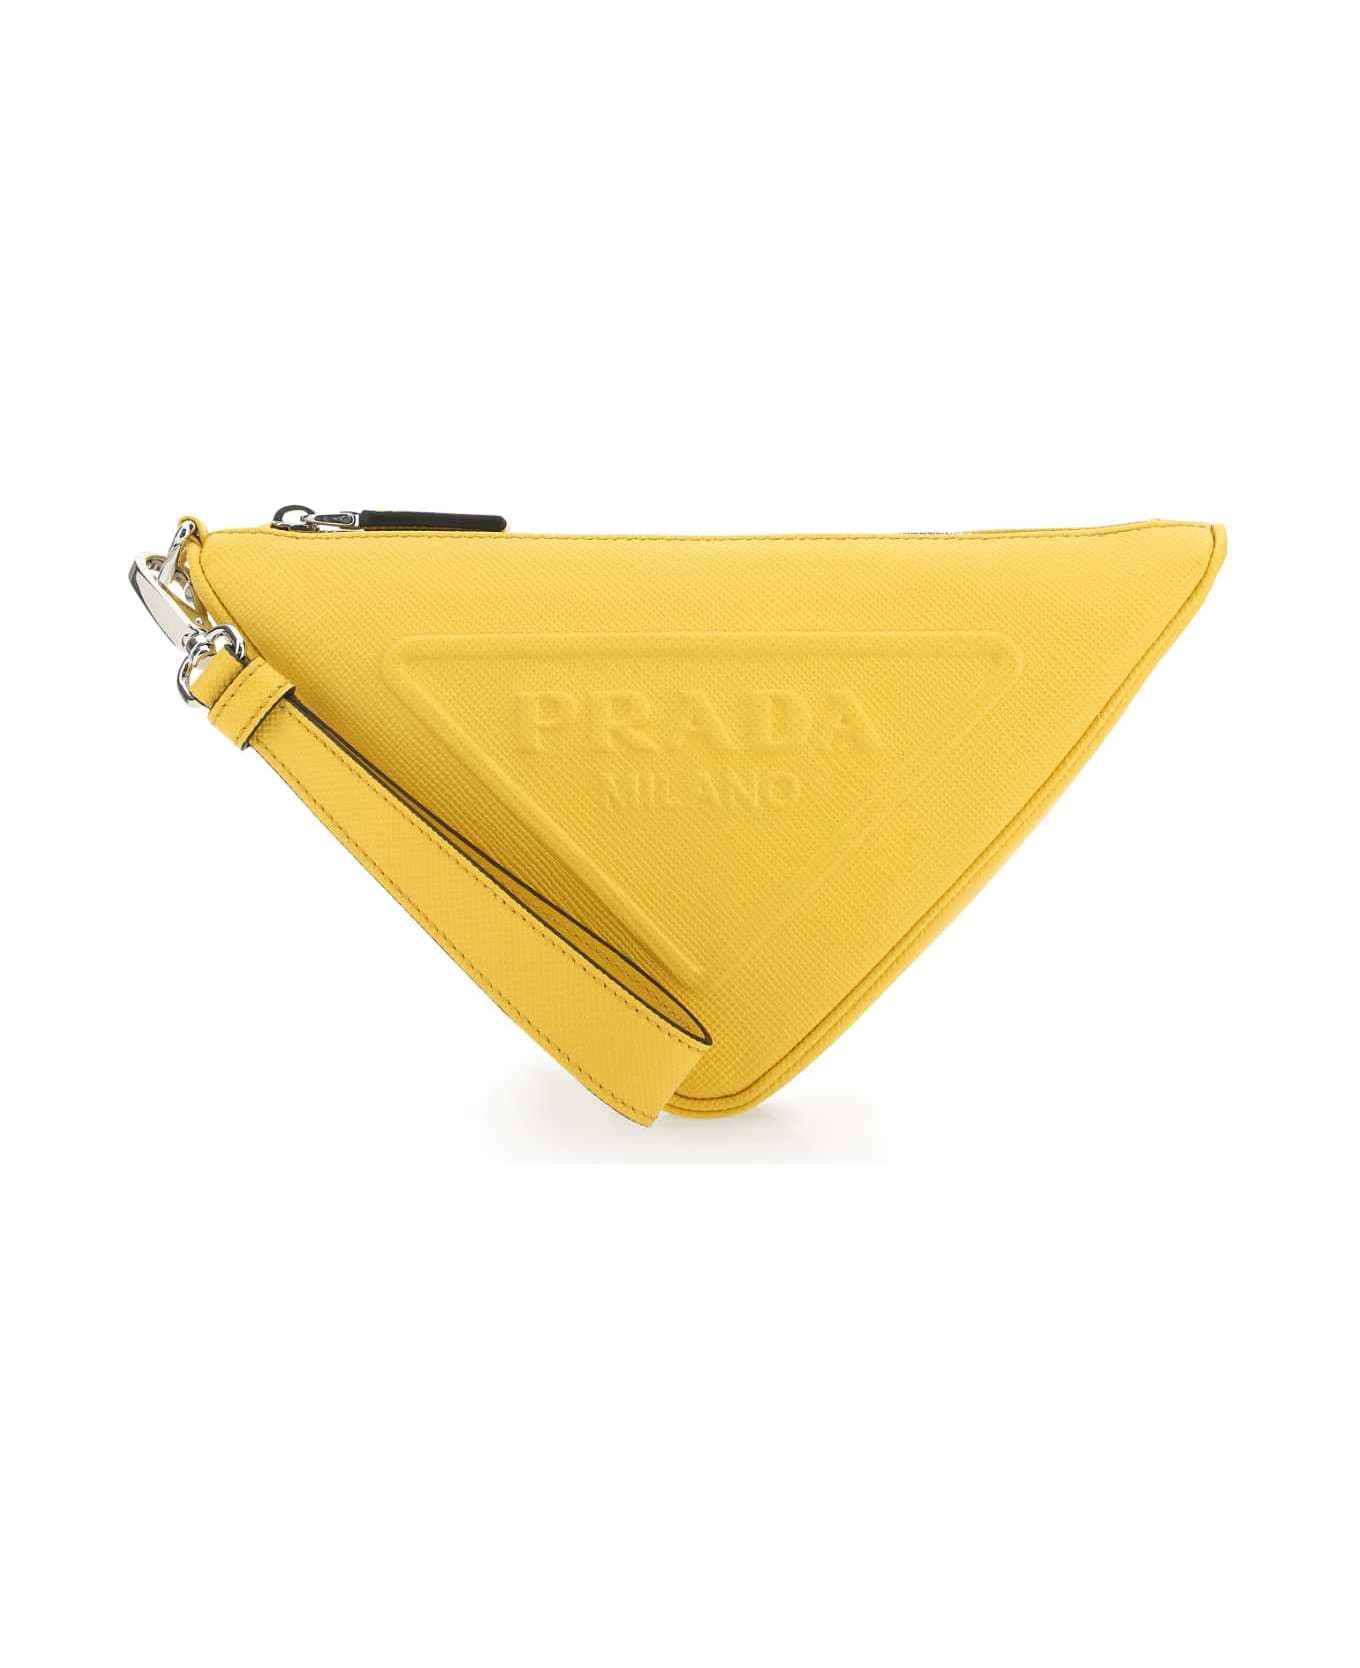 Prada Yellow Leather Triangle Clutch - F0377